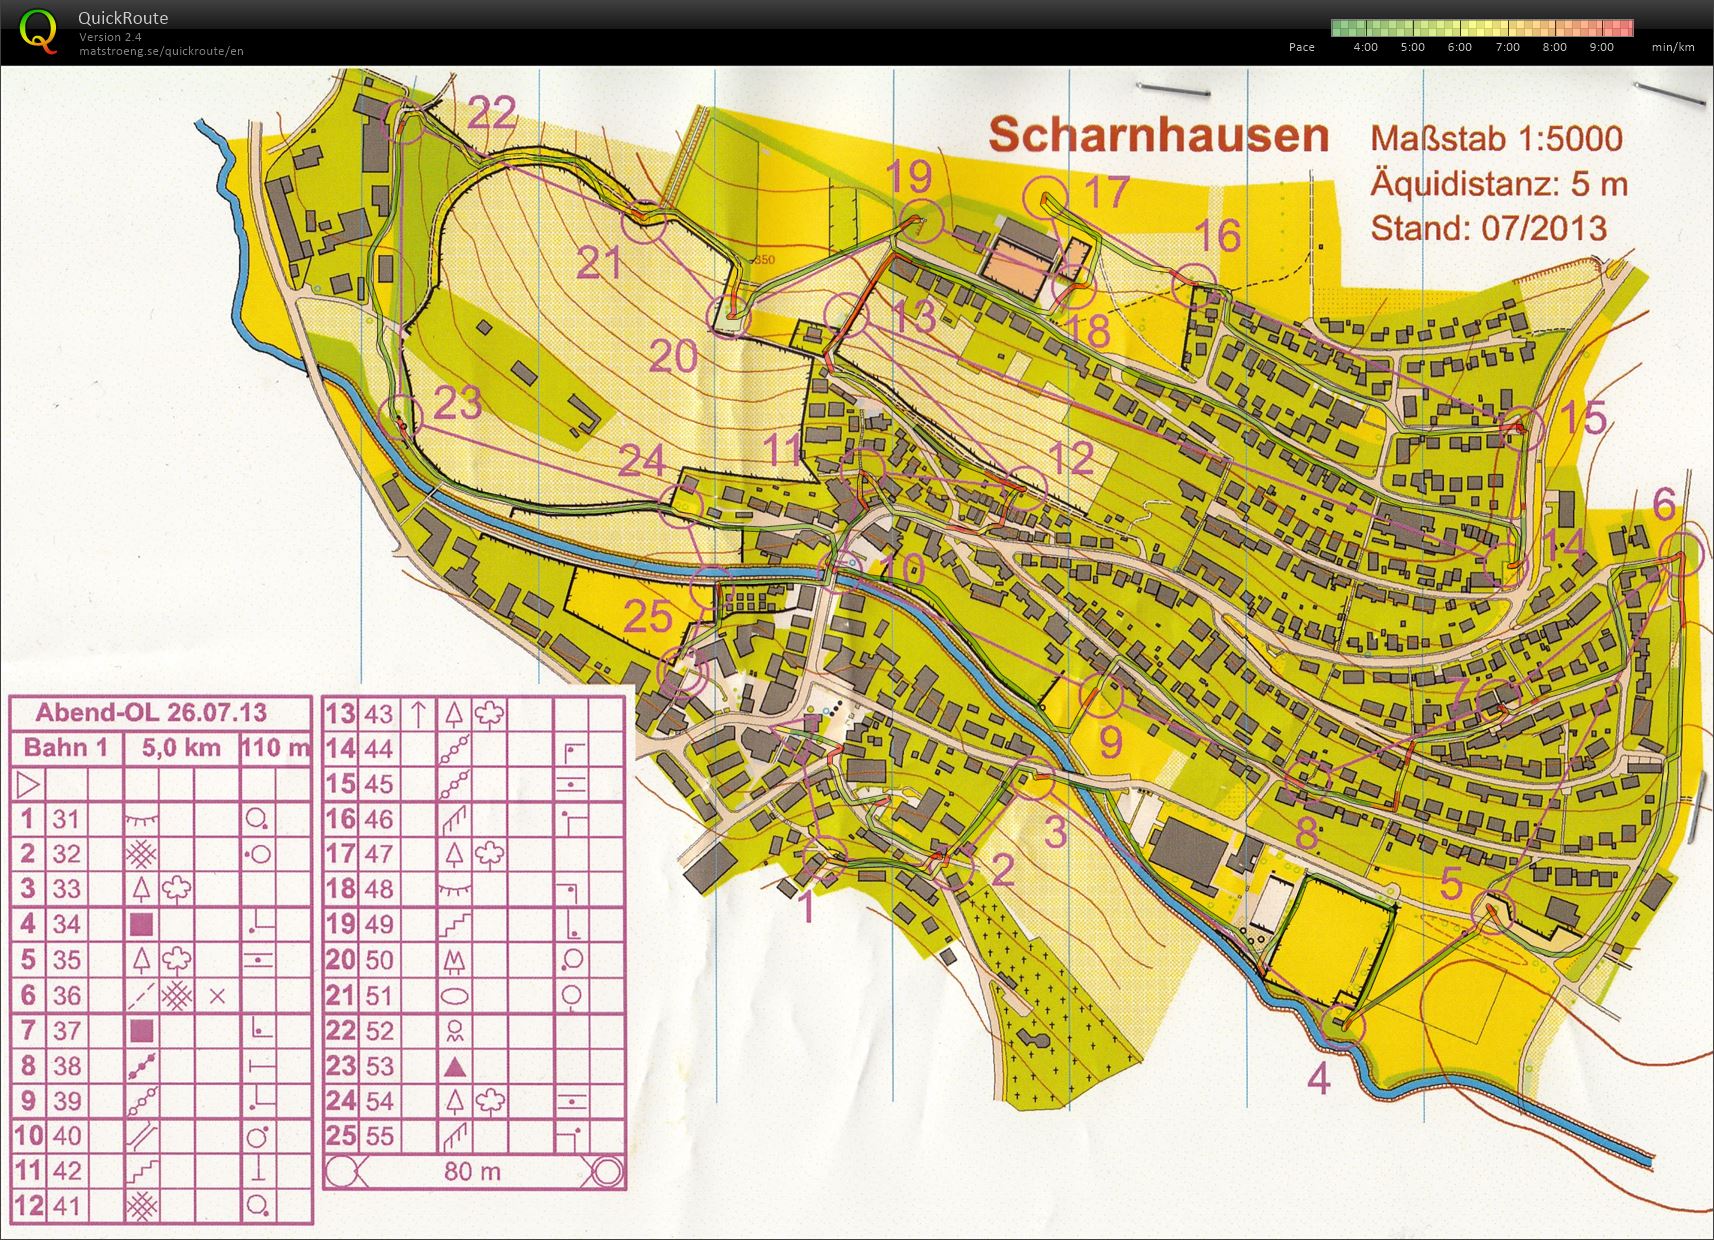 Training Scharnhausen (26-07-2013)